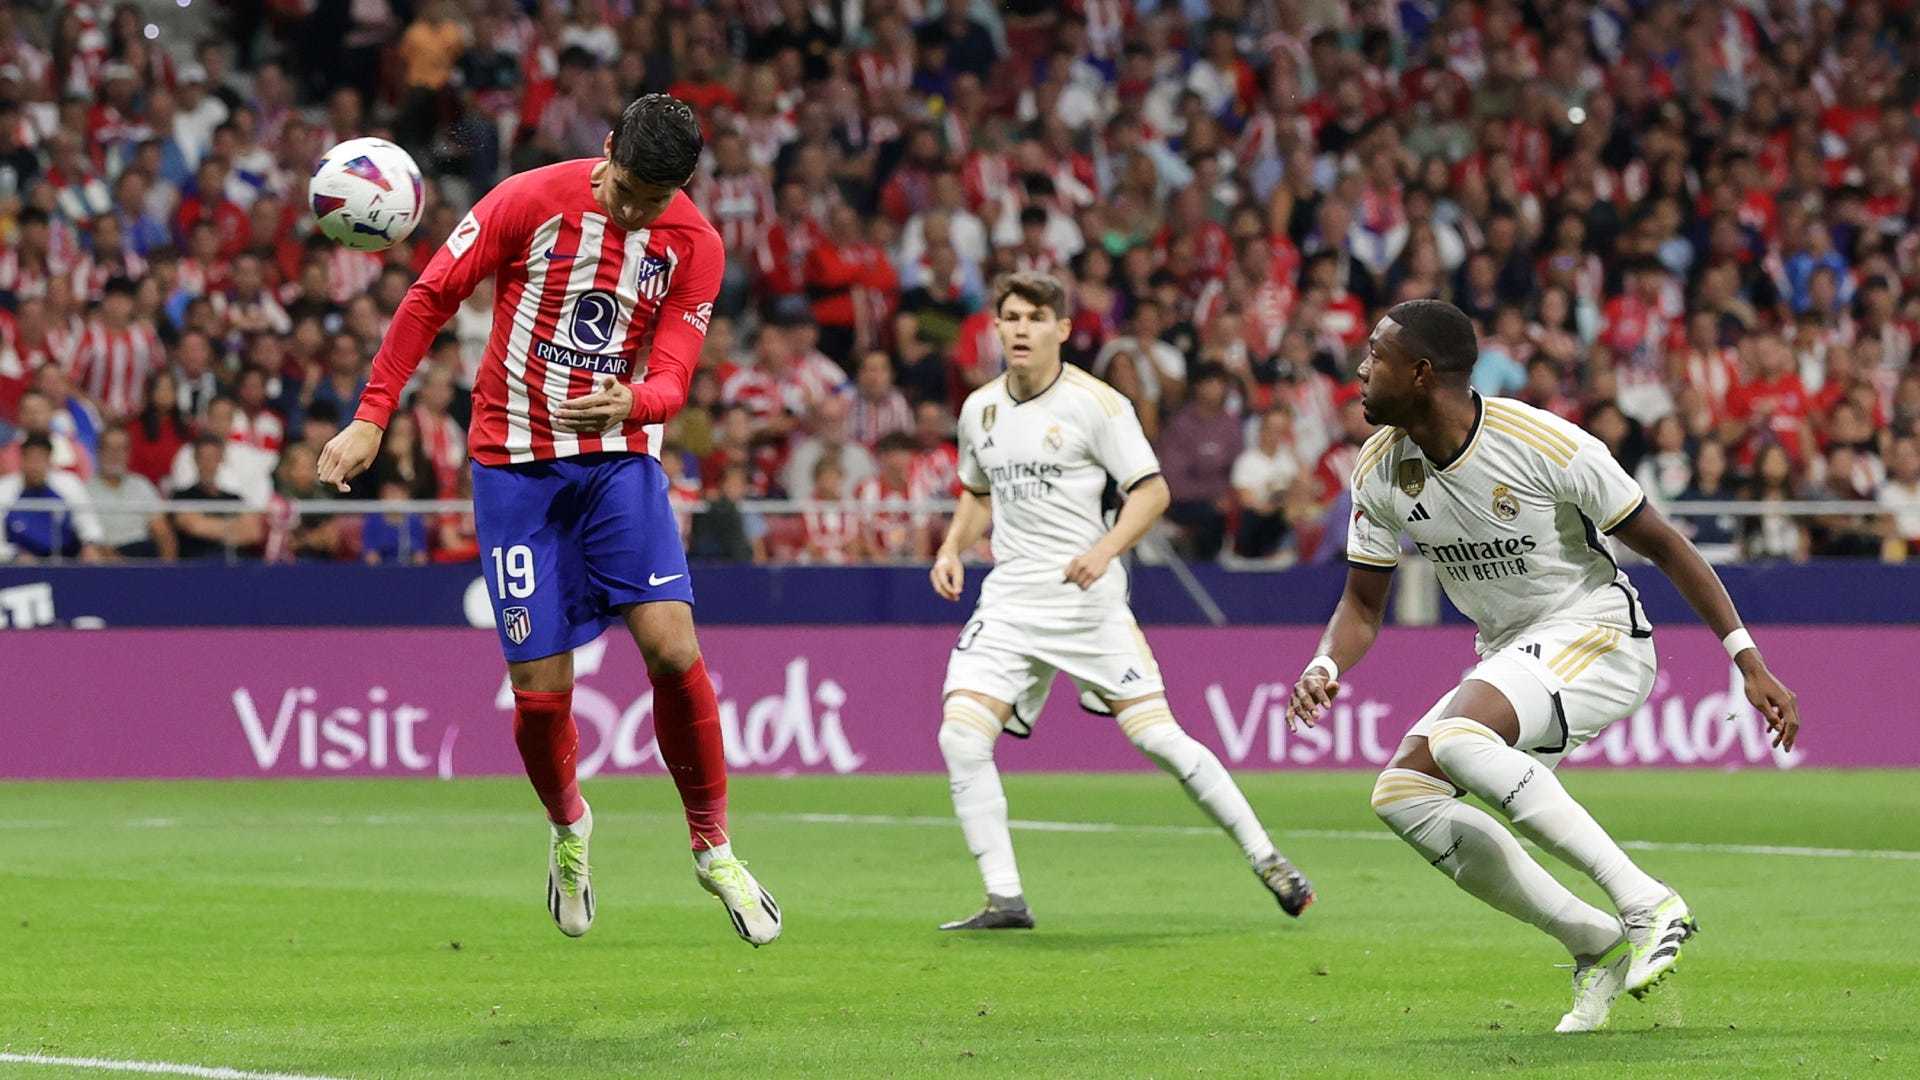 Uno de los goles de Morata, durante el ltimo derbi liguero.